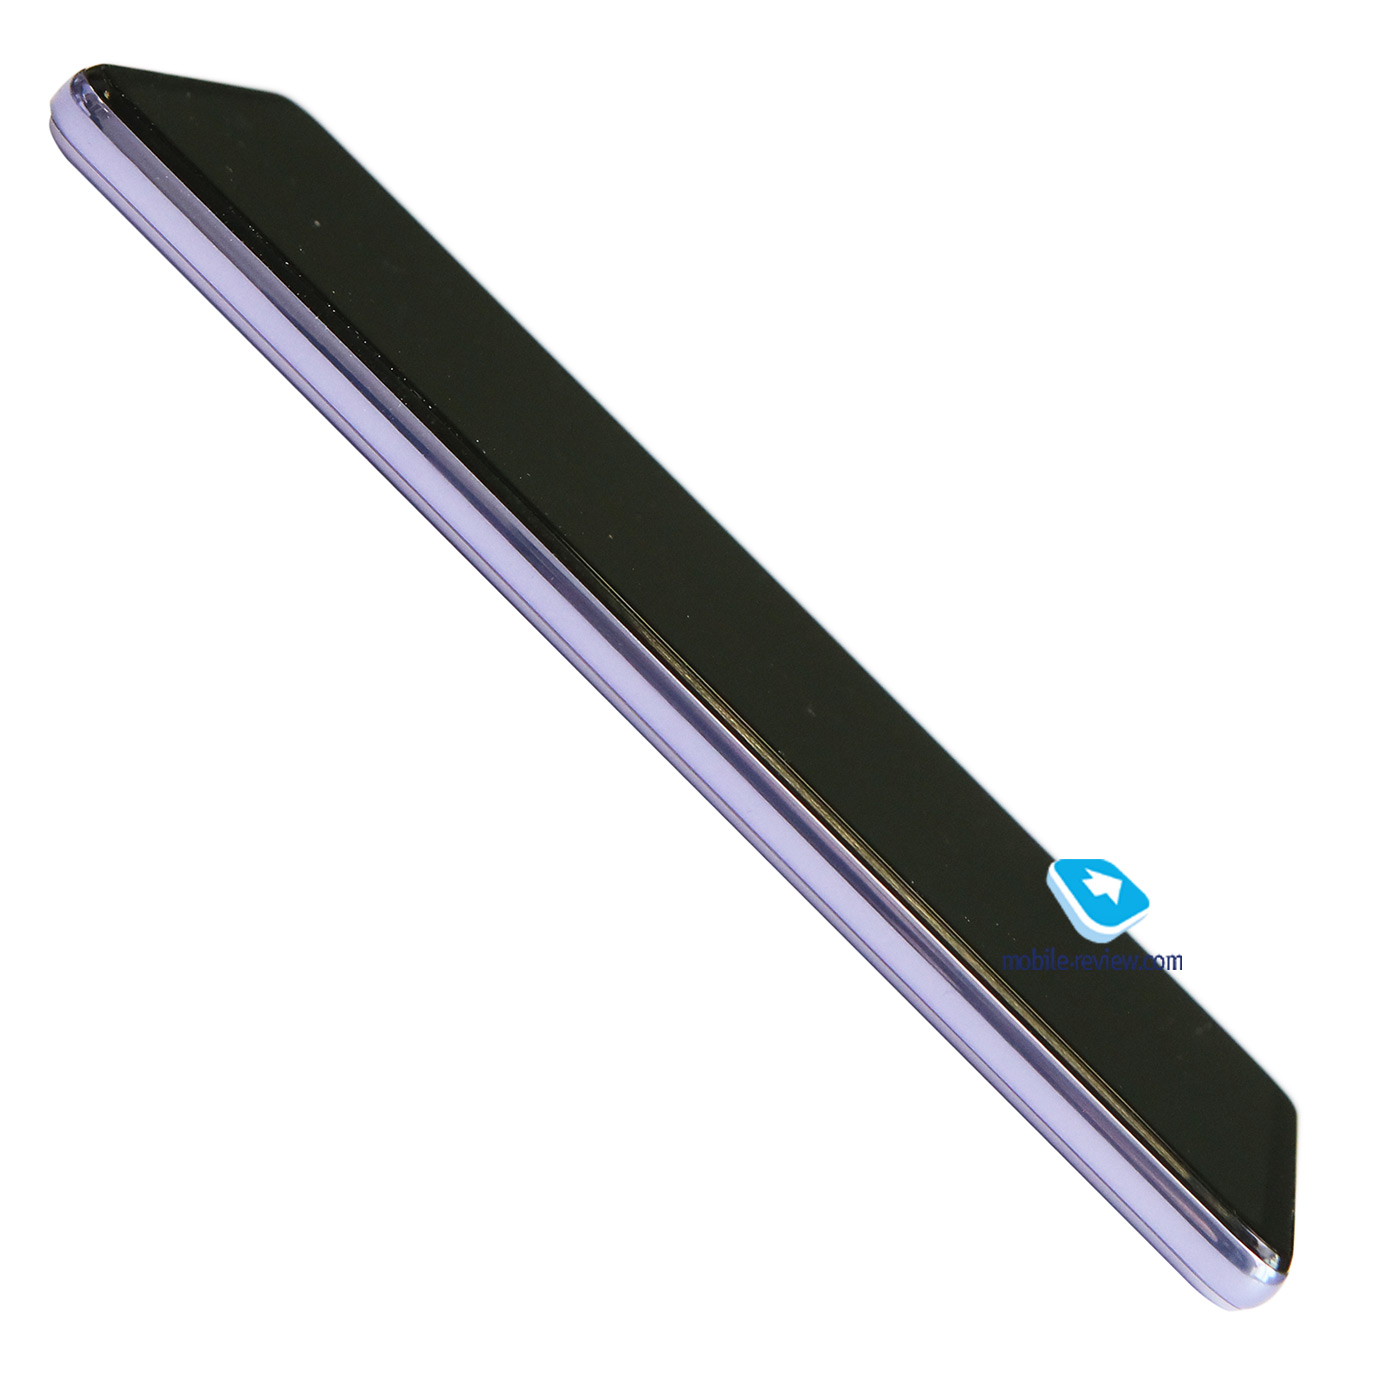   Samsung Galaxy A72 (SM-A725F/DS)